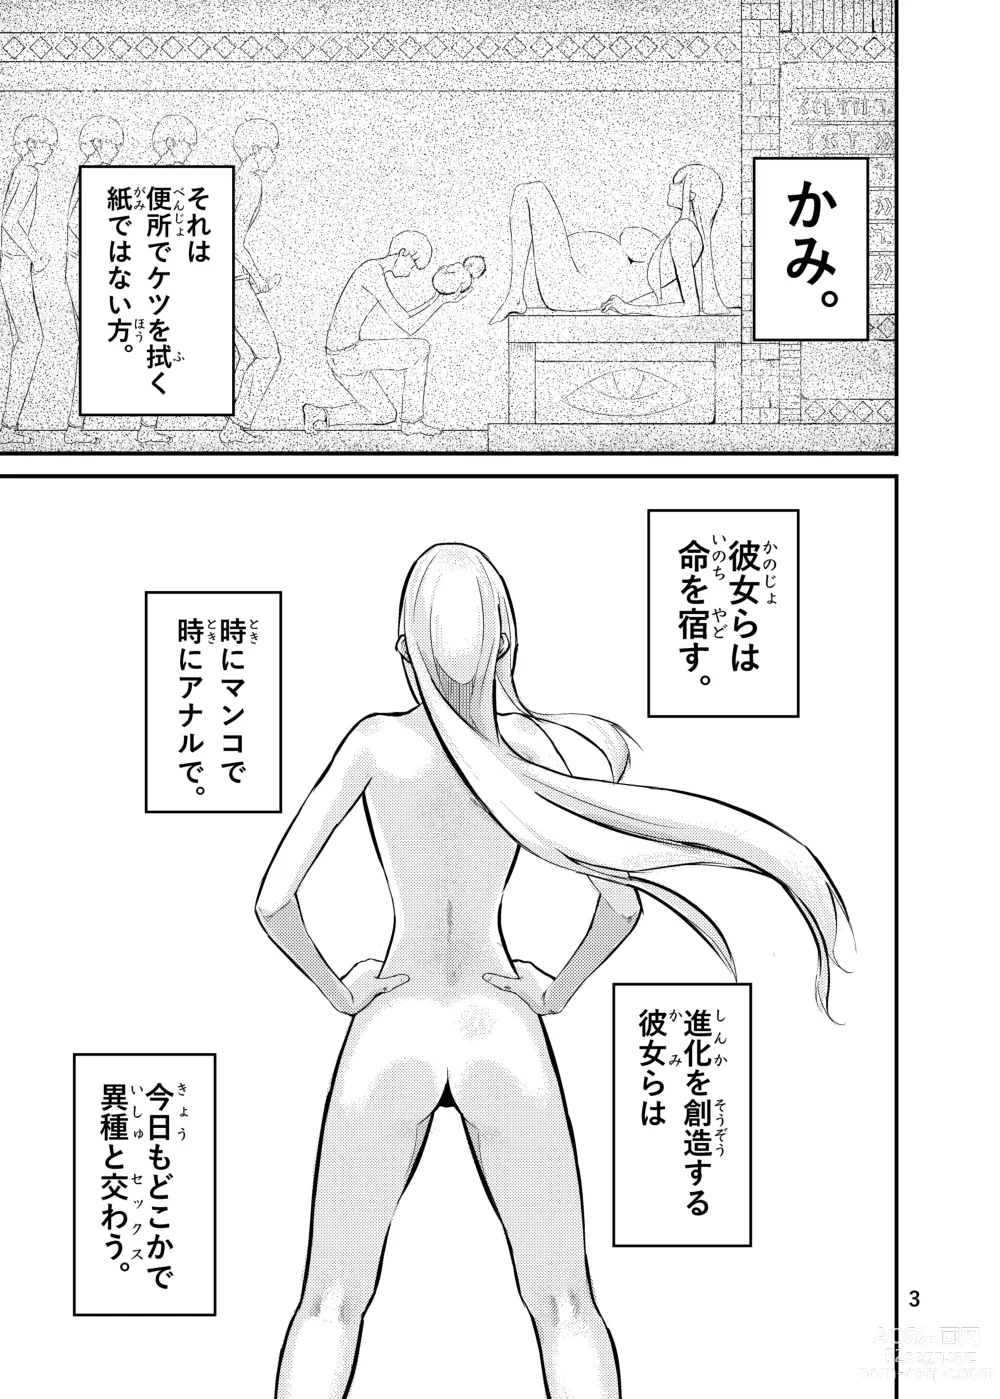 Page 3 of doujinshi 800-man Hiki no Kami-sama.